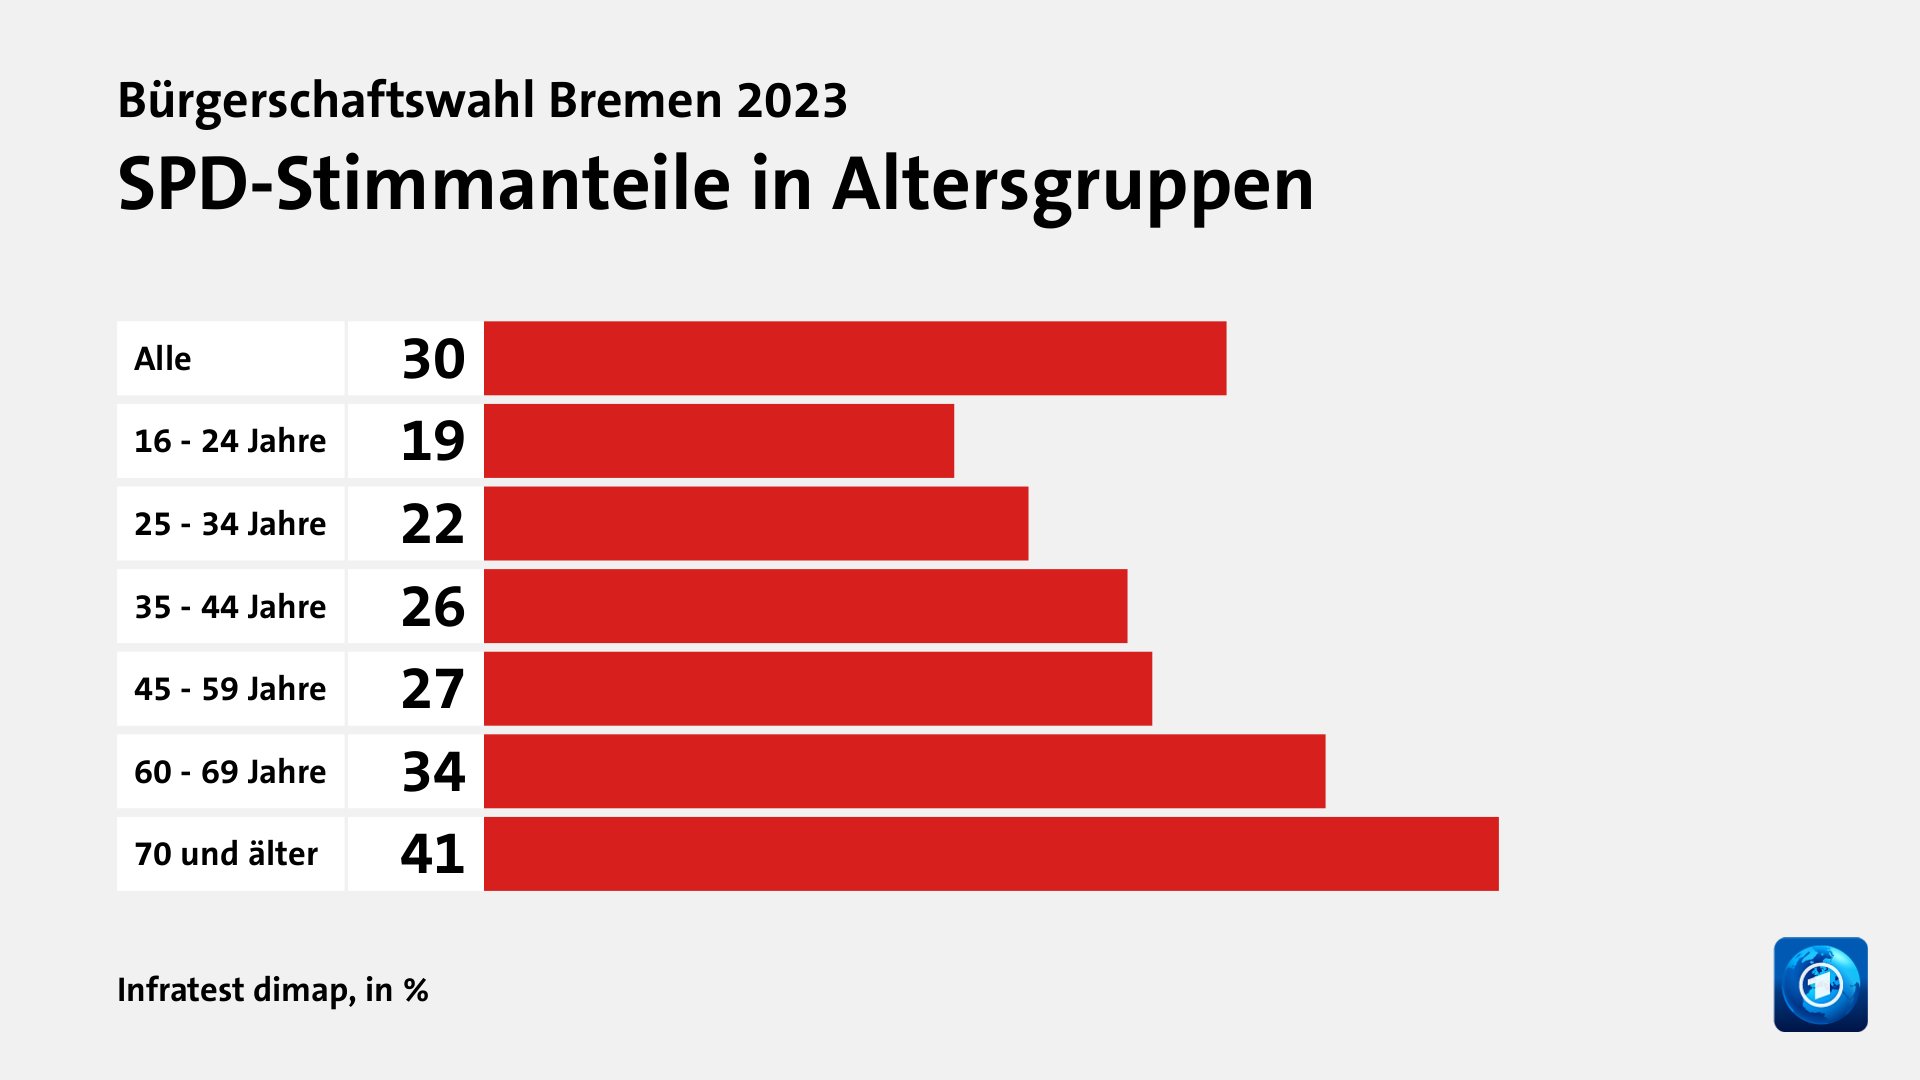 SPD-Stimmanteile in Altersgruppen, in %: Alle 30, 16 - 24 Jahre 19, 25 - 34 Jahre 22, 35 - 44 Jahre 26, 45 - 59 Jahre 27, 60 - 69 Jahre 34, 70 und älter 41, Quelle: Infratest dimap